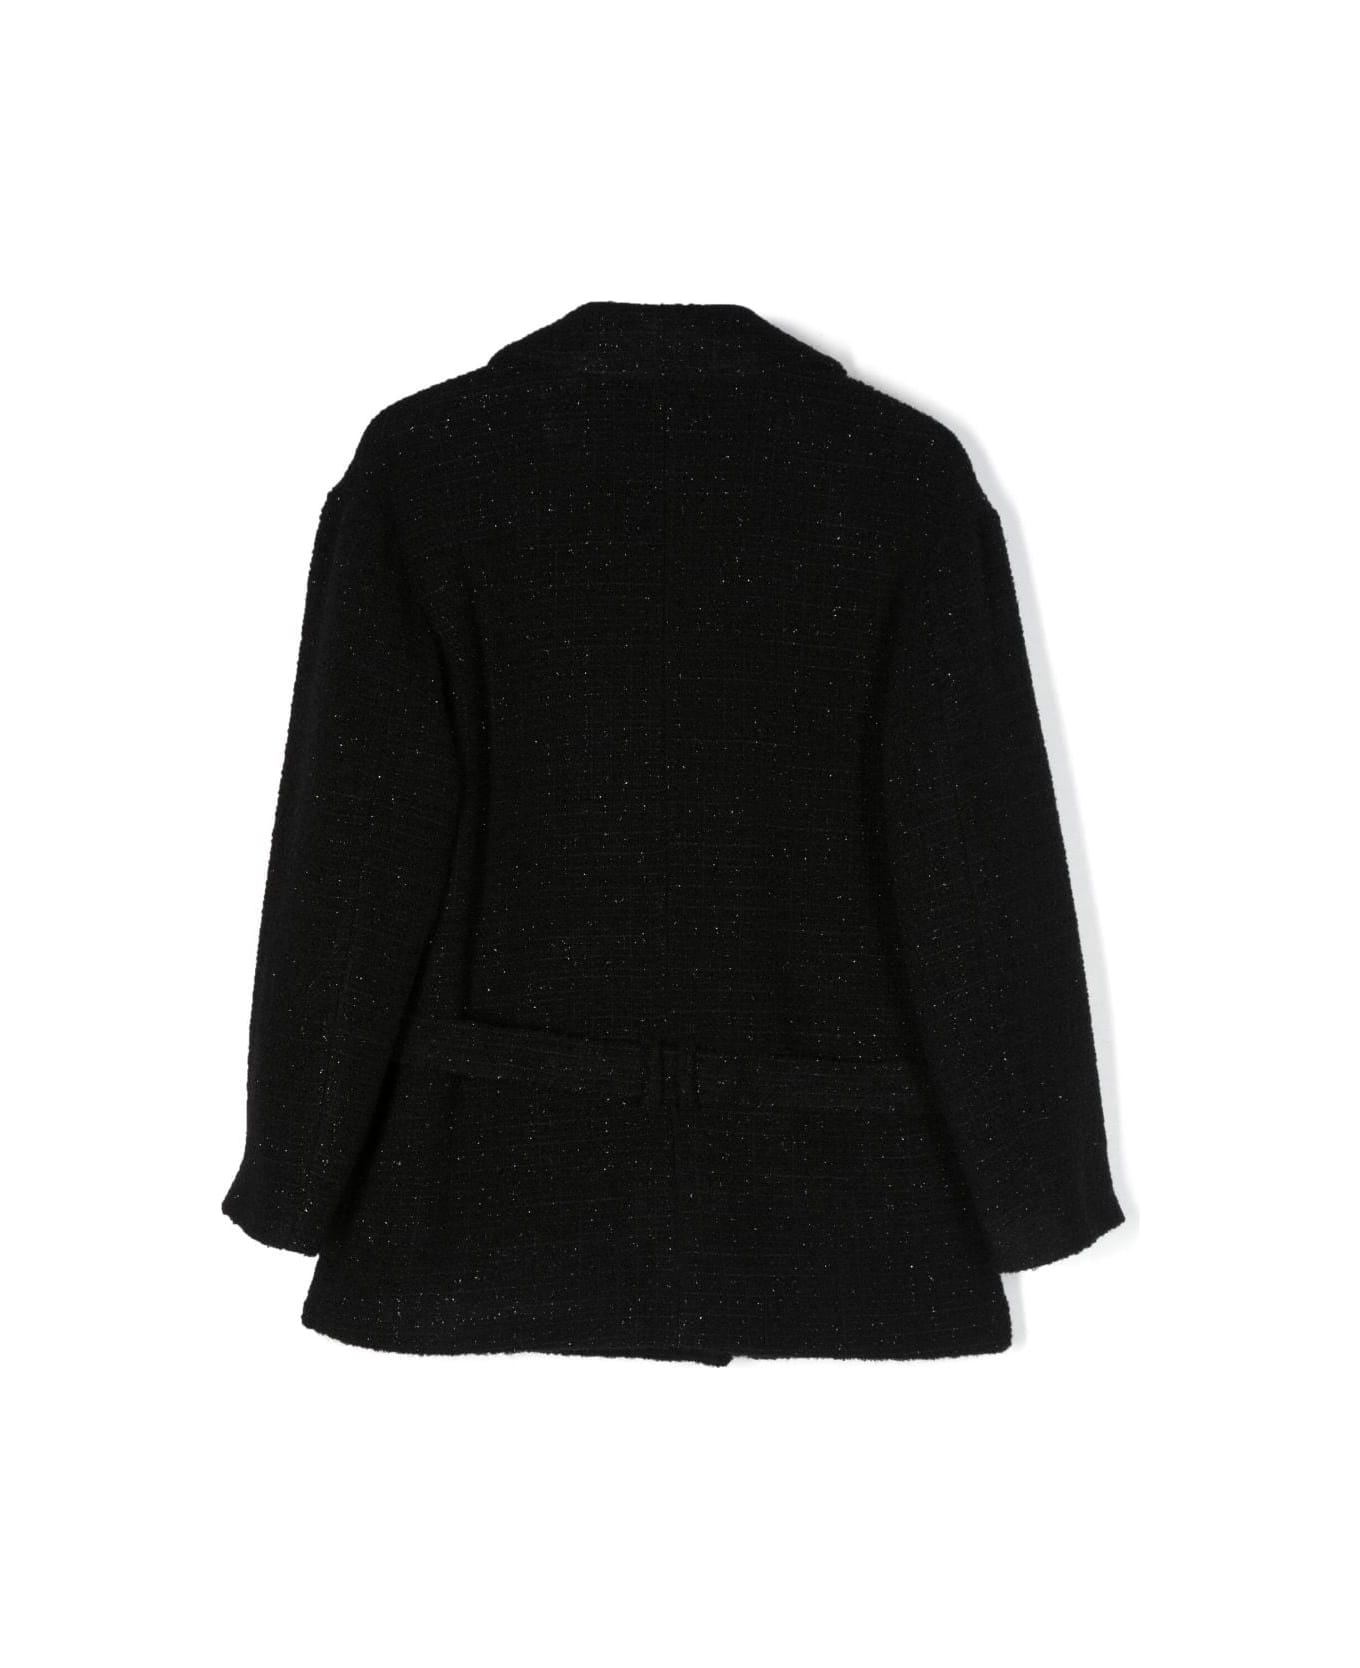 Balmain Black Wool Tweed Double-breasted Coat - black